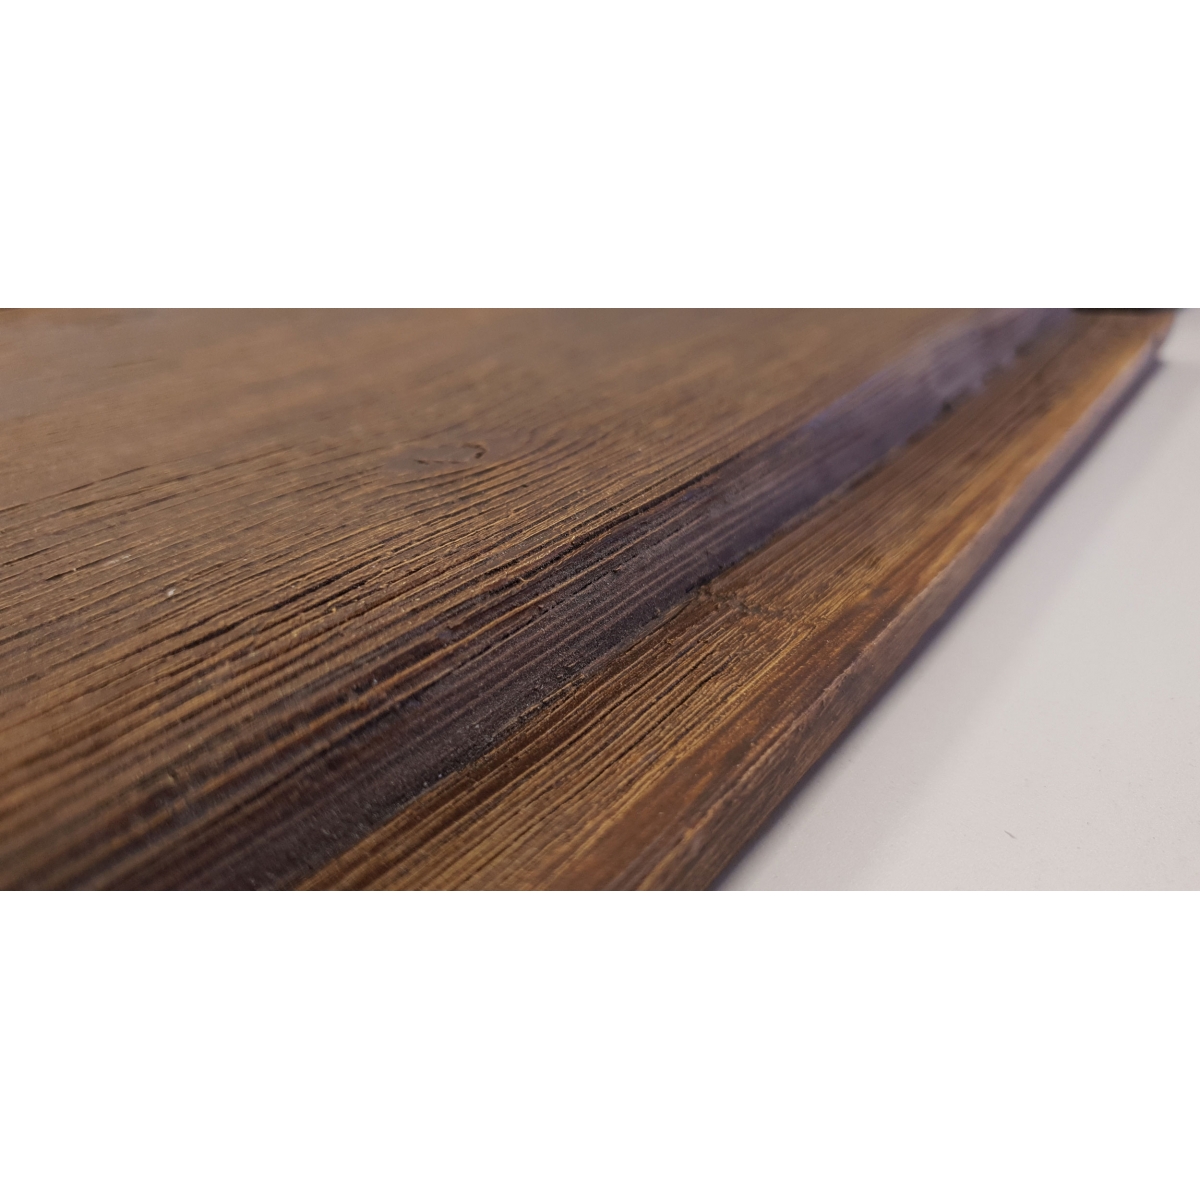 La Viguería vigas de madeira de imitação de poliuretano - Painel rústico sem ripas de madeira de imitação 400x62cm